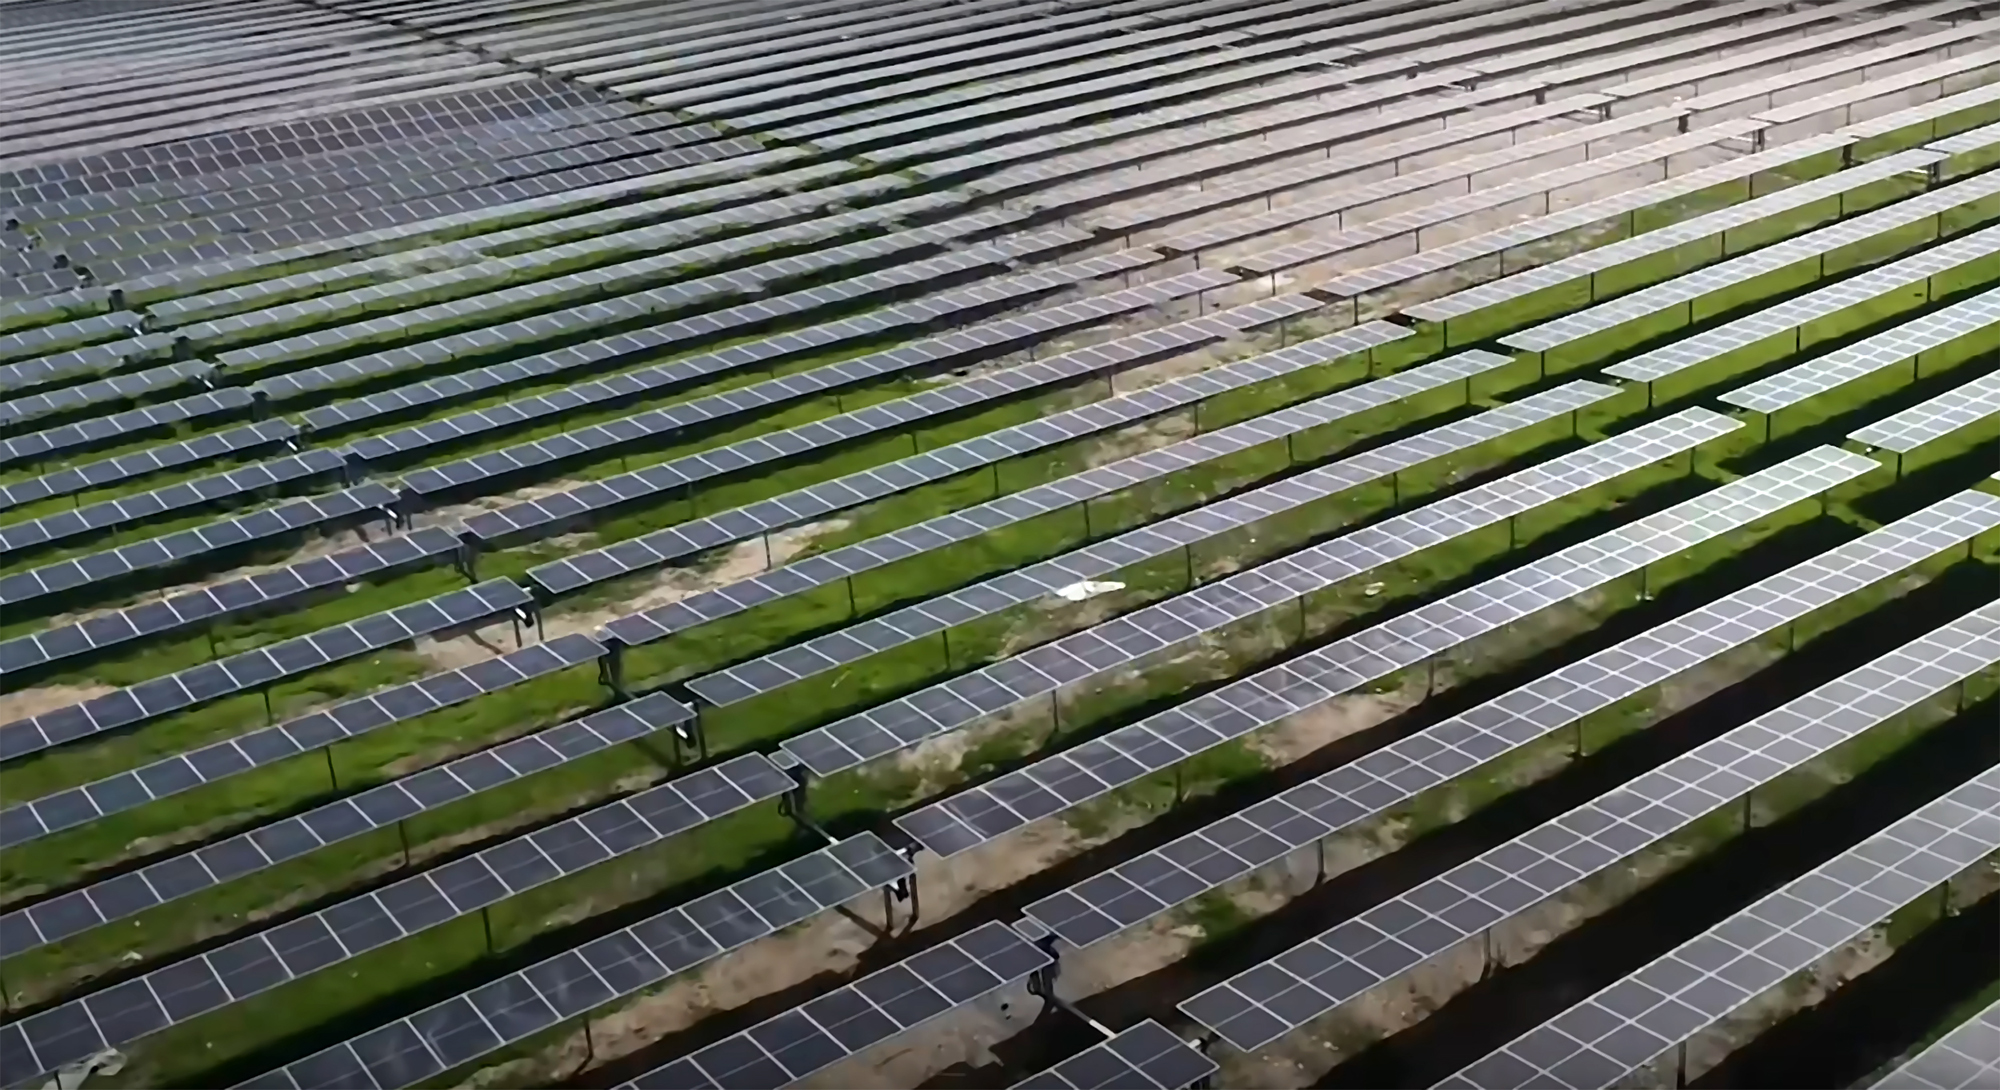 Europako planta fotovoltaiko handiena izango da irudiko Francisco Pizarro deiturikoa, 1.000 hektarea ingurukoa. Baina aurretik jada beste hainbat eraikita dituzte, tamaina antzekoa dutenak.